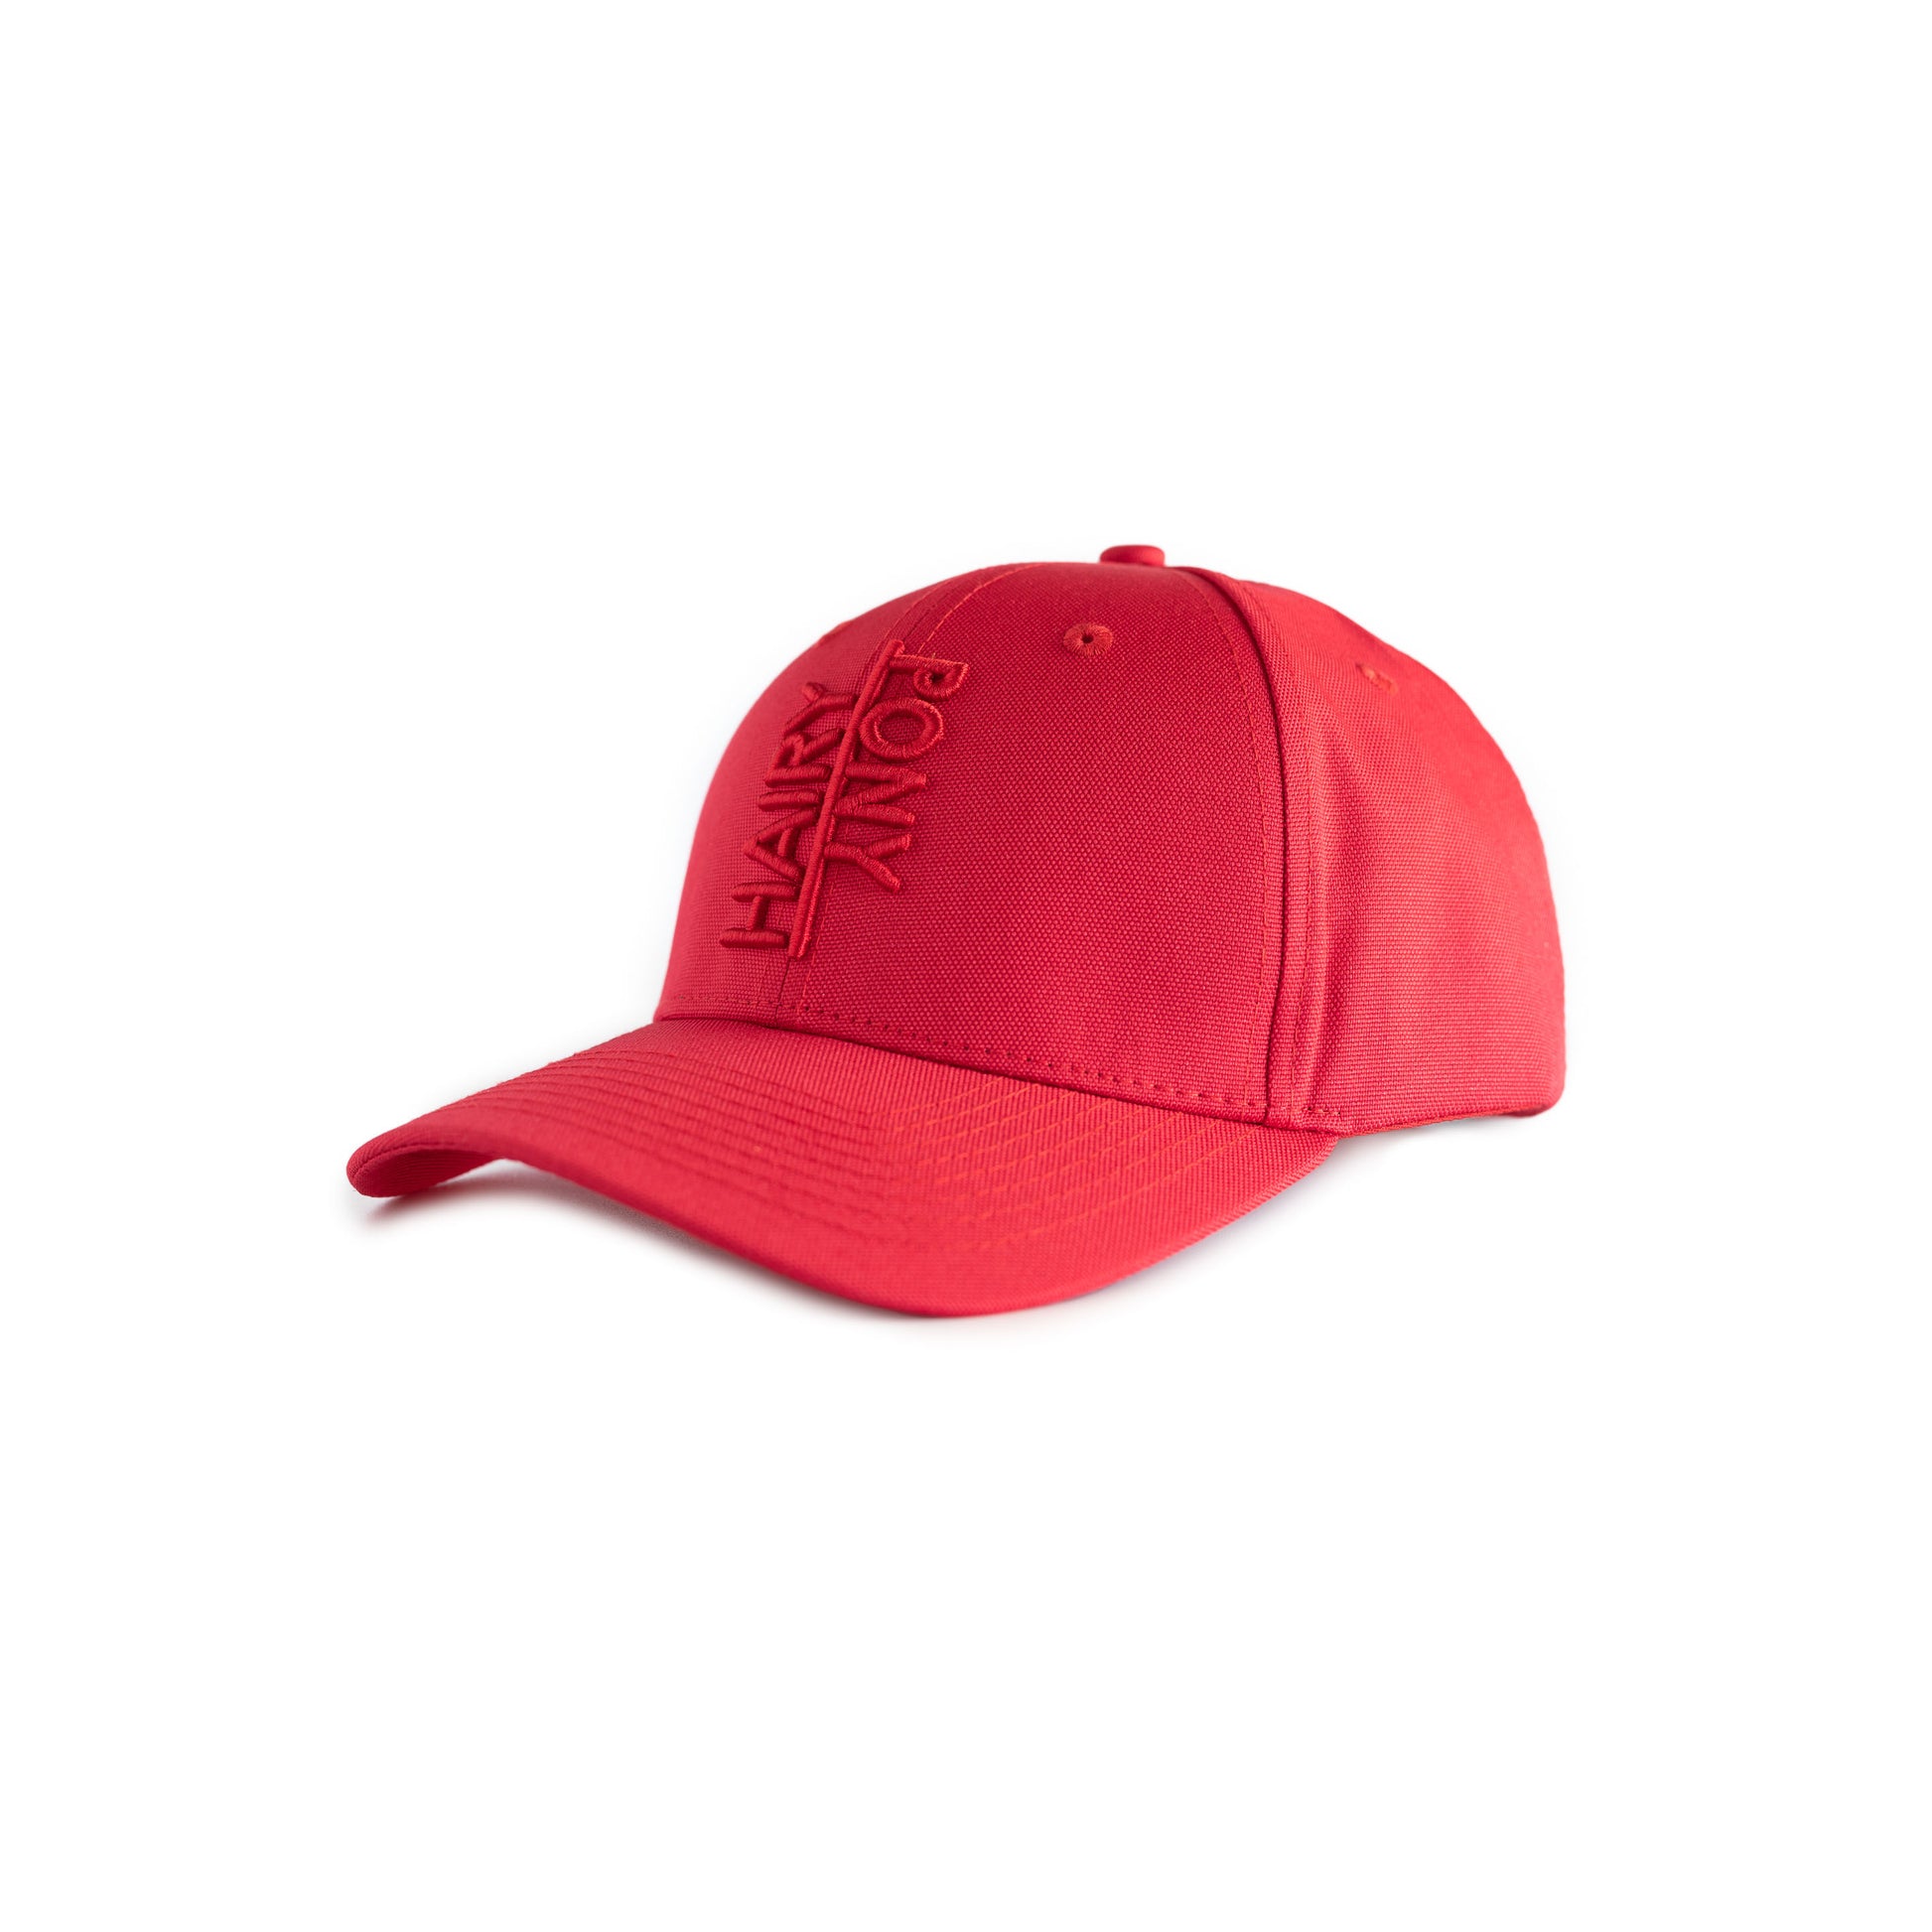 Red Equestrian Sports Cap